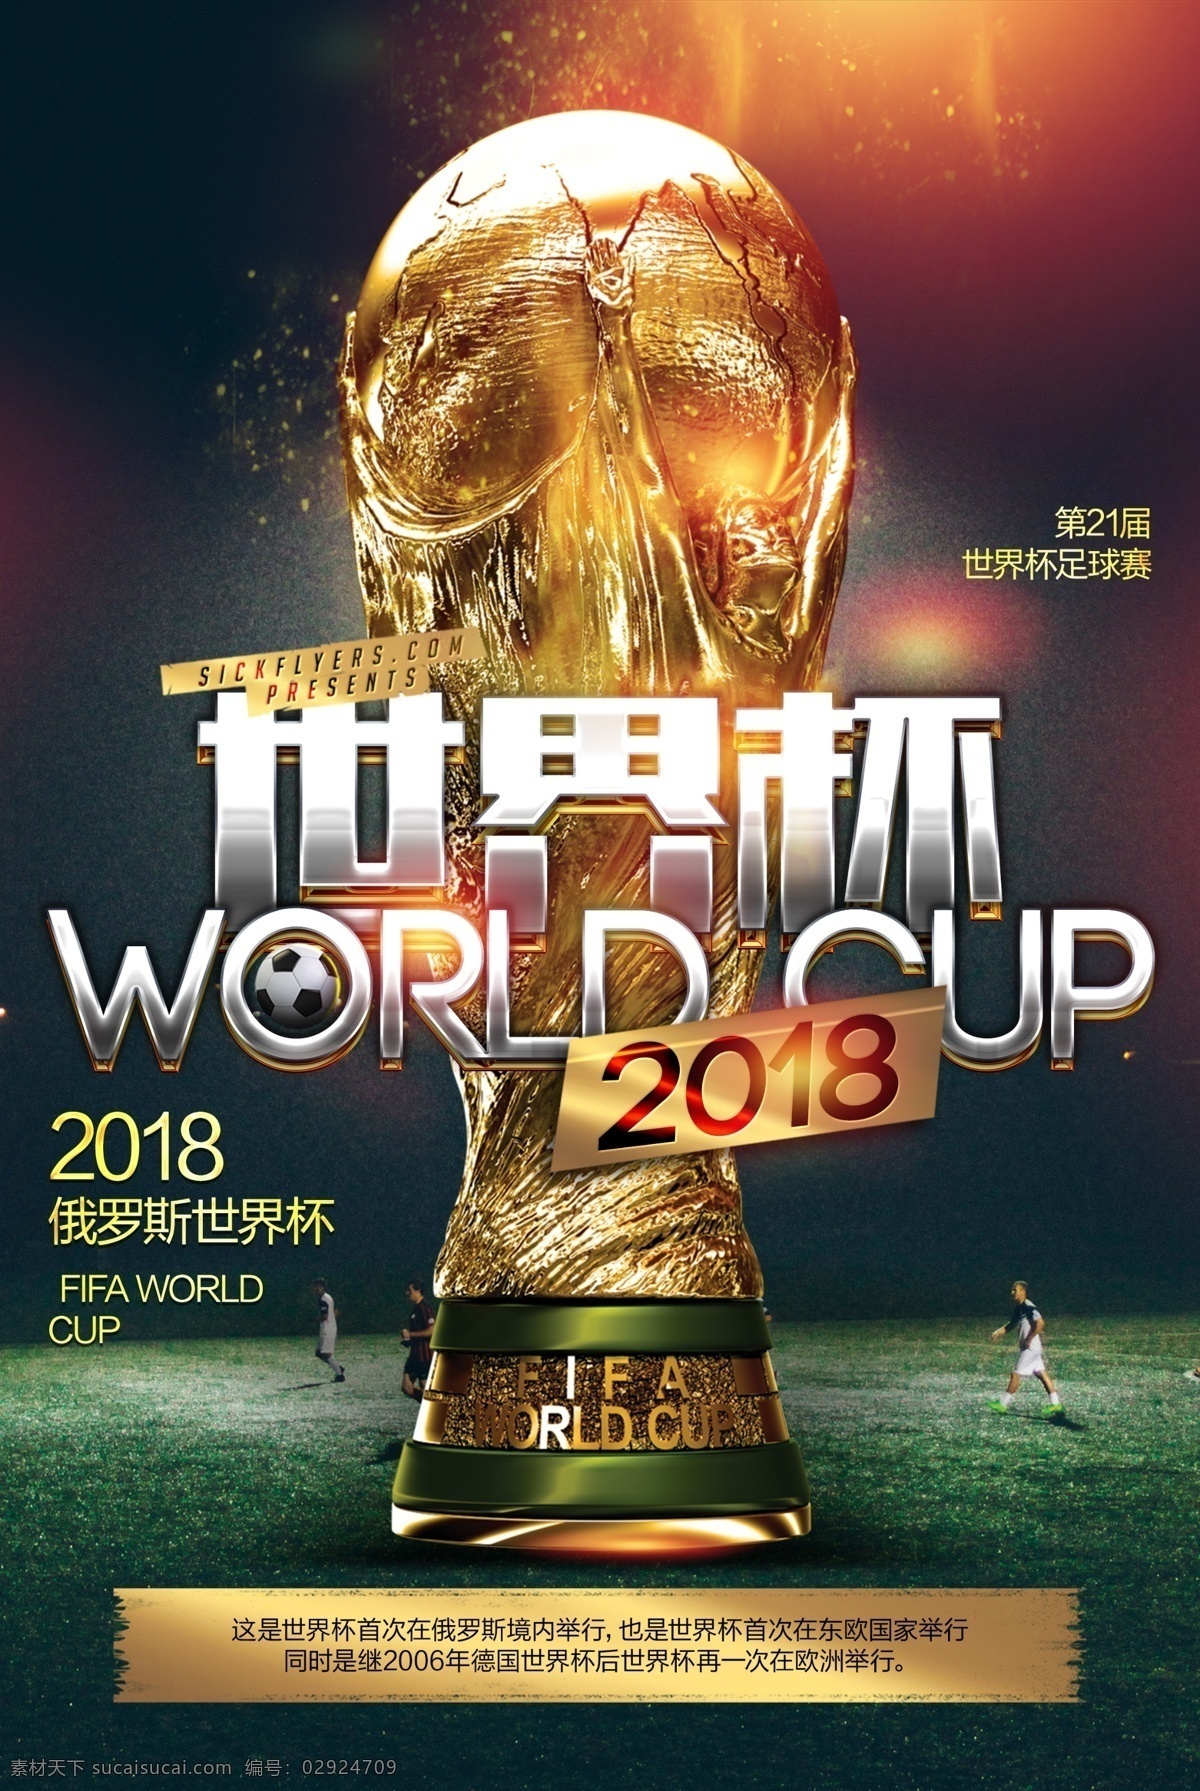 酷 炫 黑金 2018 世界杯 体育 宣传海报 模板 足球 酒吧 奖杯 俄罗斯世界杯 足球赛 俄罗斯 决赛 球赛 球场 旗帜 辉煌 比赛 世界足球 冠军 足球对决